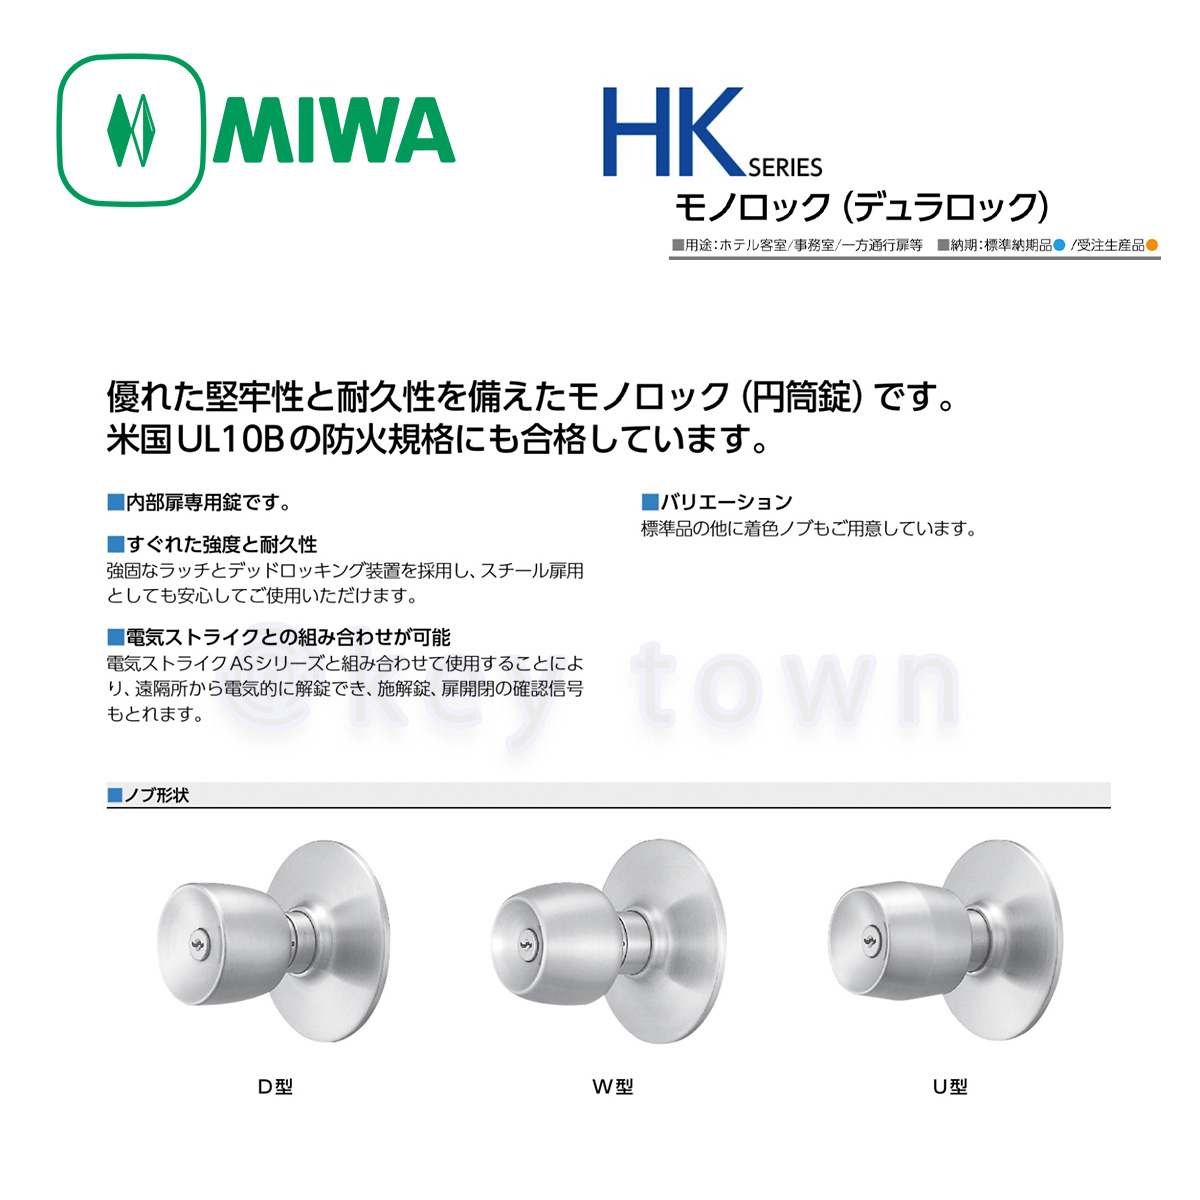 数量は多】 MIWA HK-2A型 自動施錠タイプ モノロック錠 外側：U9シリンダー付固定ノブ 内側：空ノブ 常に空錠 